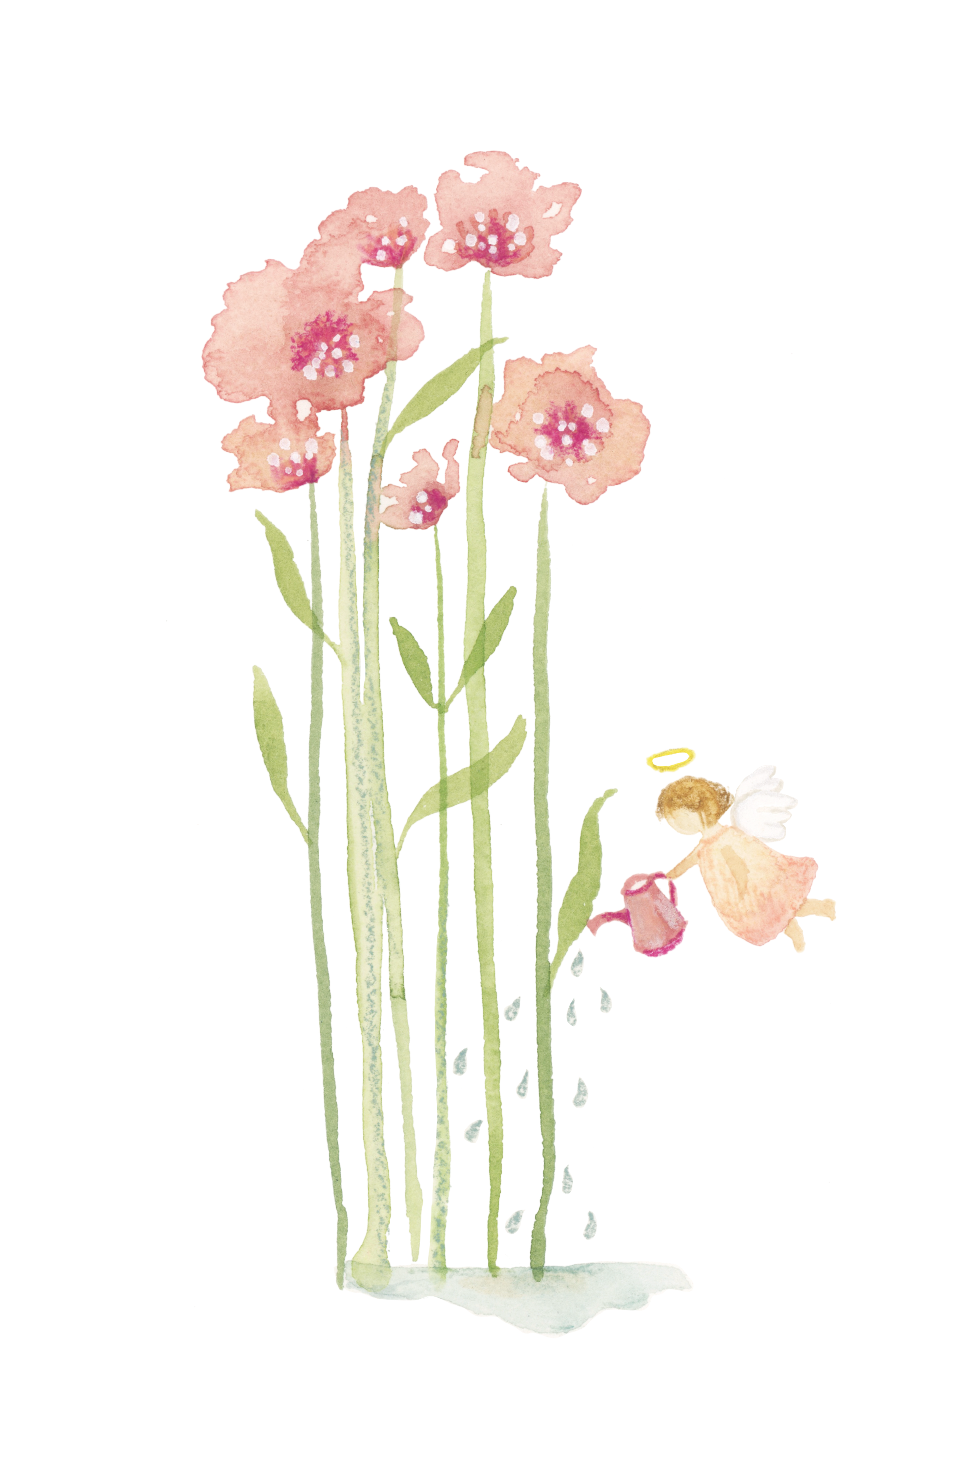 Santito ilustrado por BERNIE flores